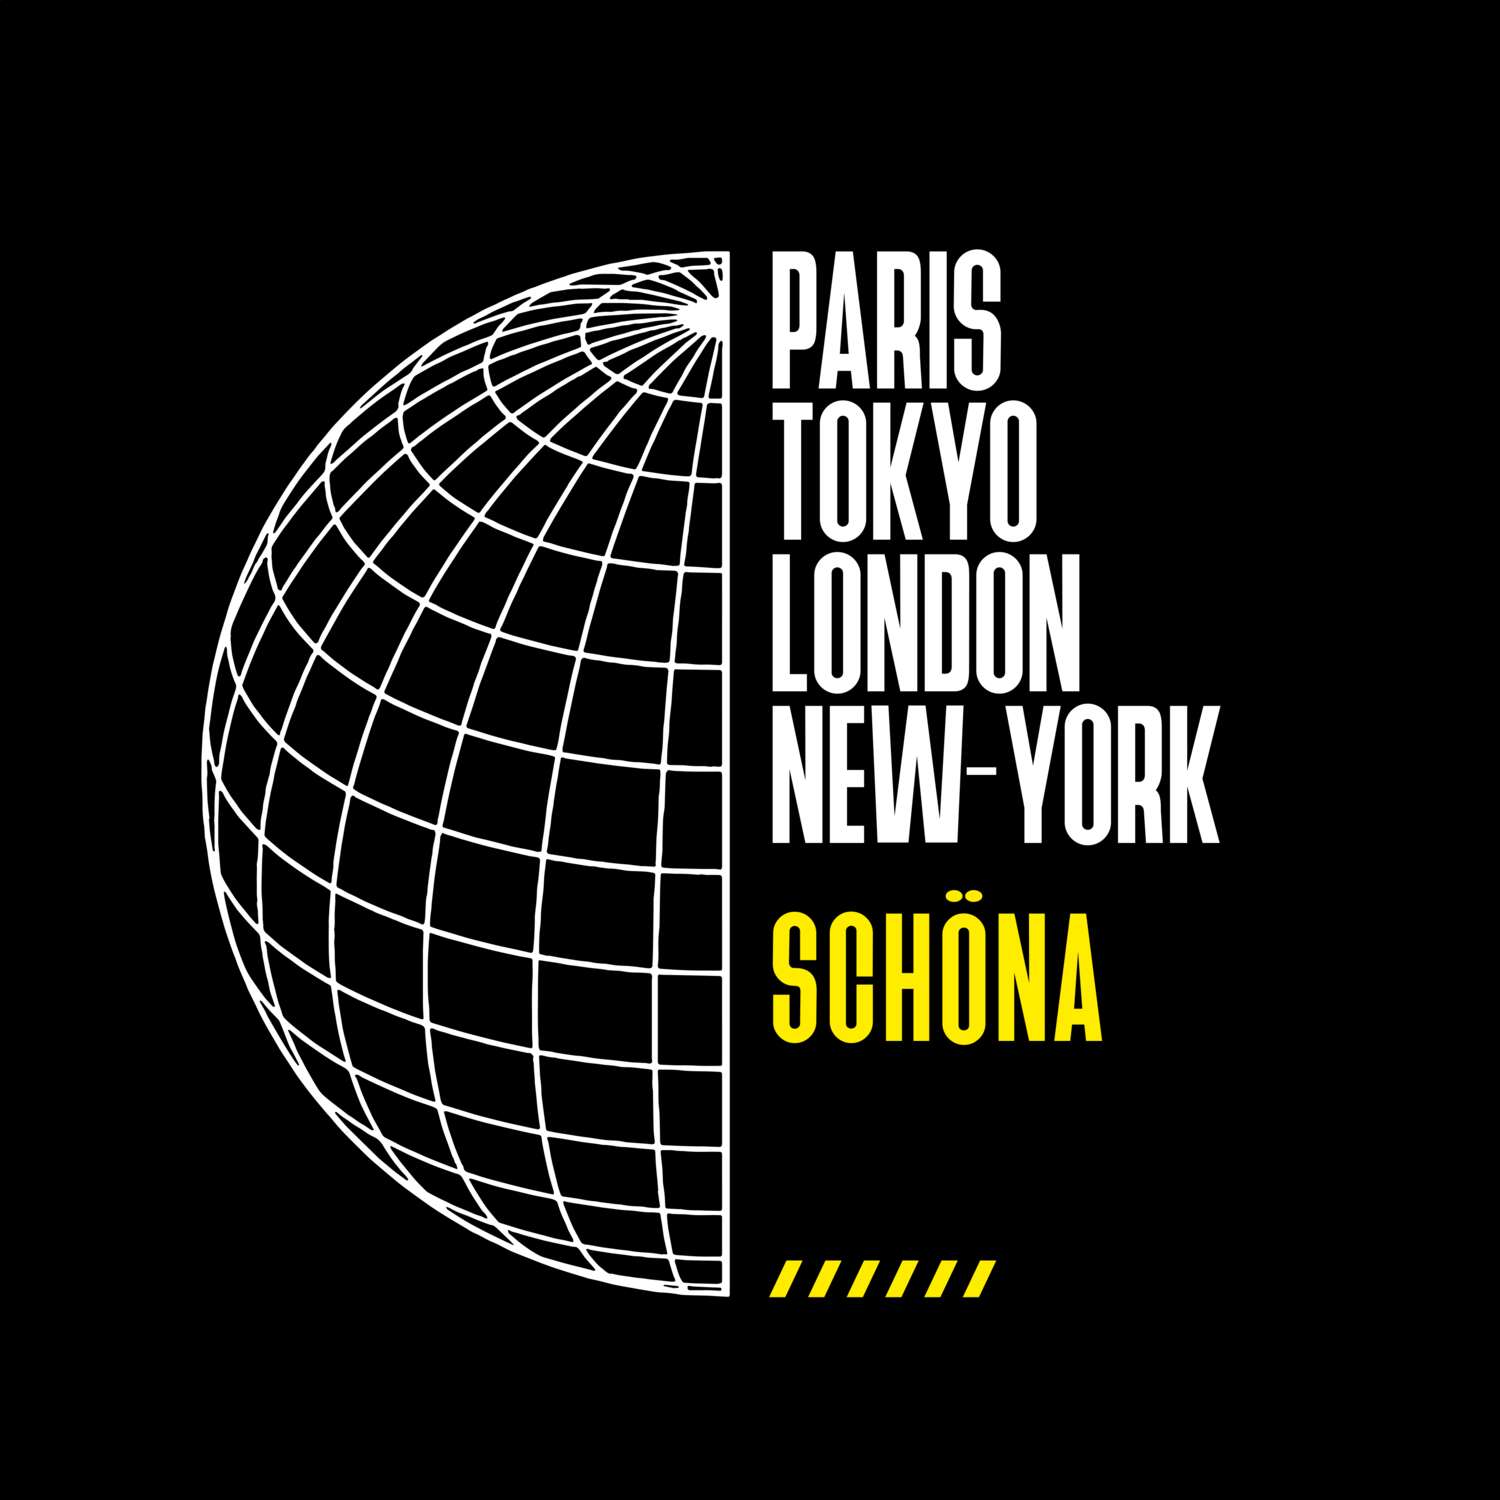 Schöna T-Shirt »Paris Tokyo London«